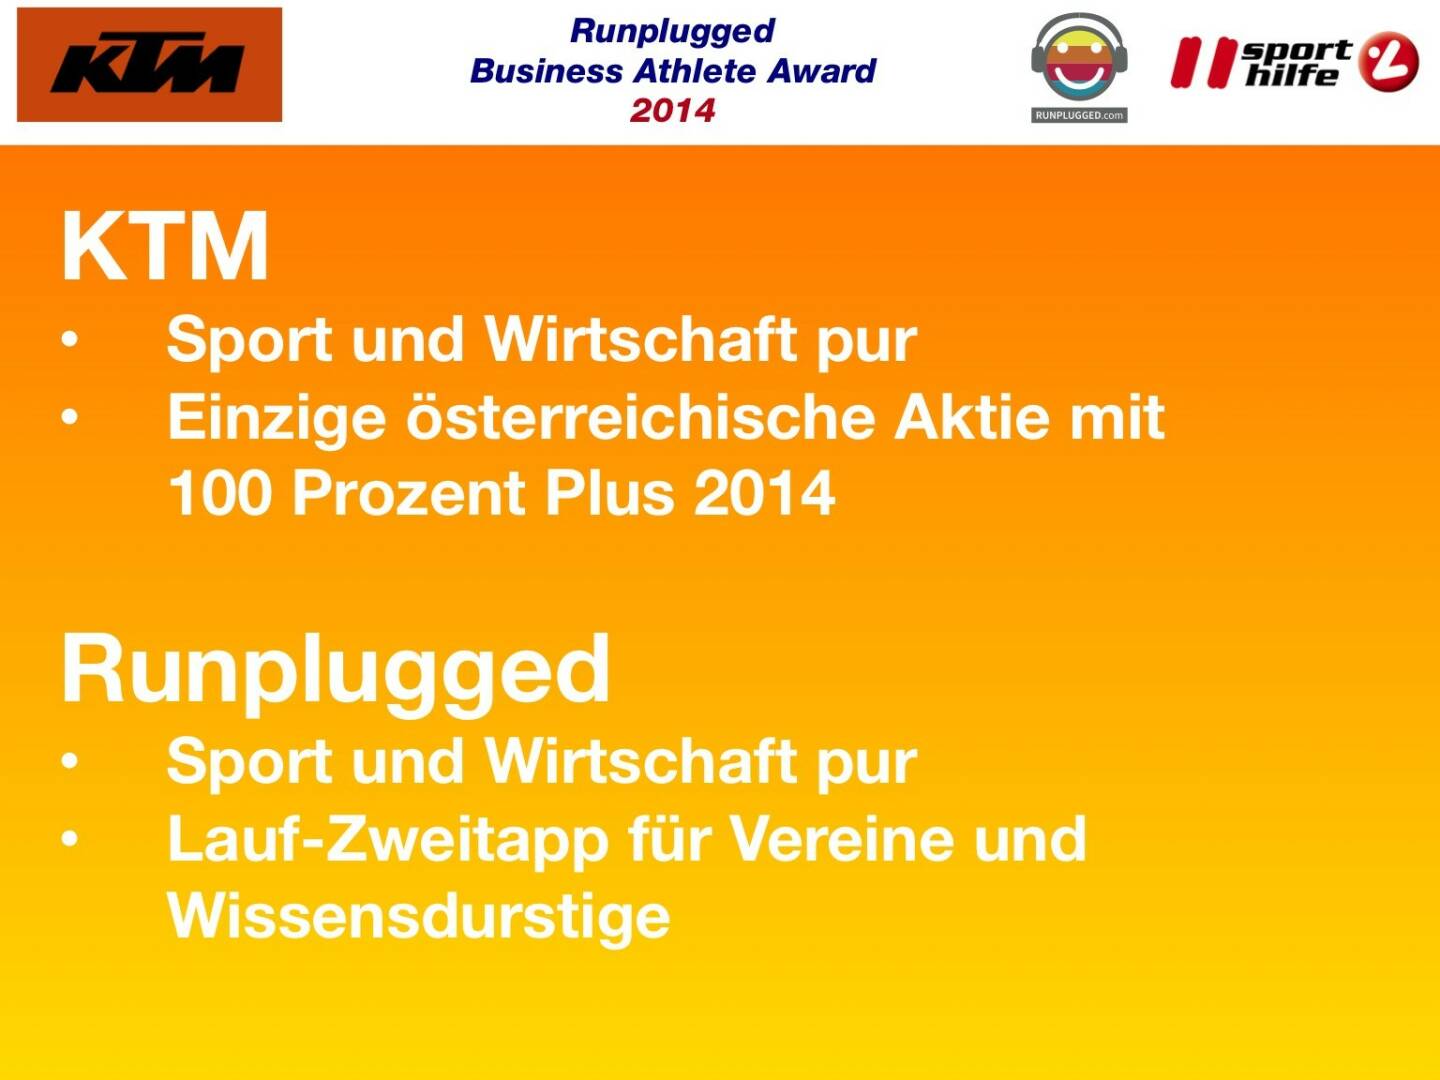 KTM: Sport und Wirtschaft pur, Einzige österreichische Aktie mit 100 Prozent Plus 2014 
Runplugged: Sport und Wirtschaft pur, Lauf-Zweitapp für Vereine und Wissensdurstige